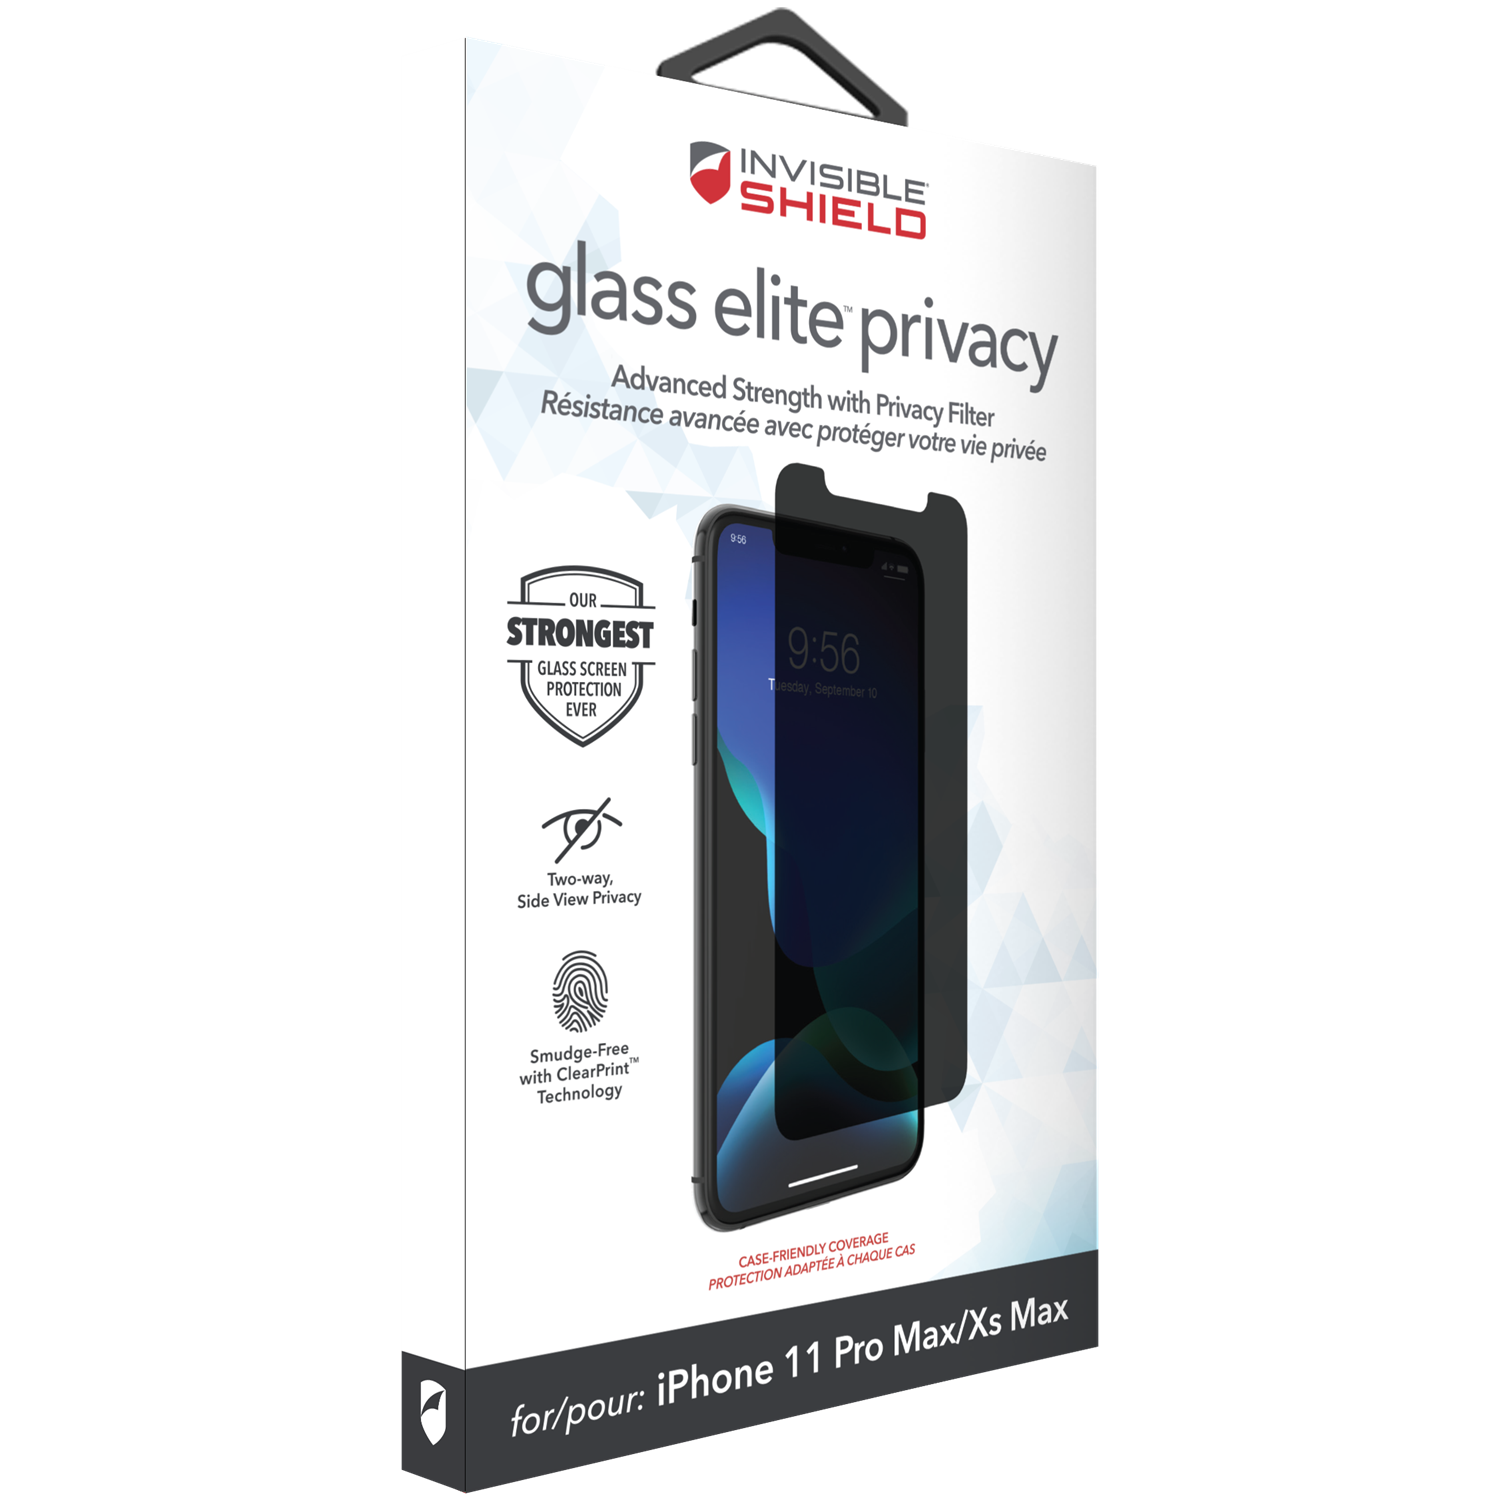 iPhone 11 Pro Max/XS Max InvisibleShield Glass Elite Privacy